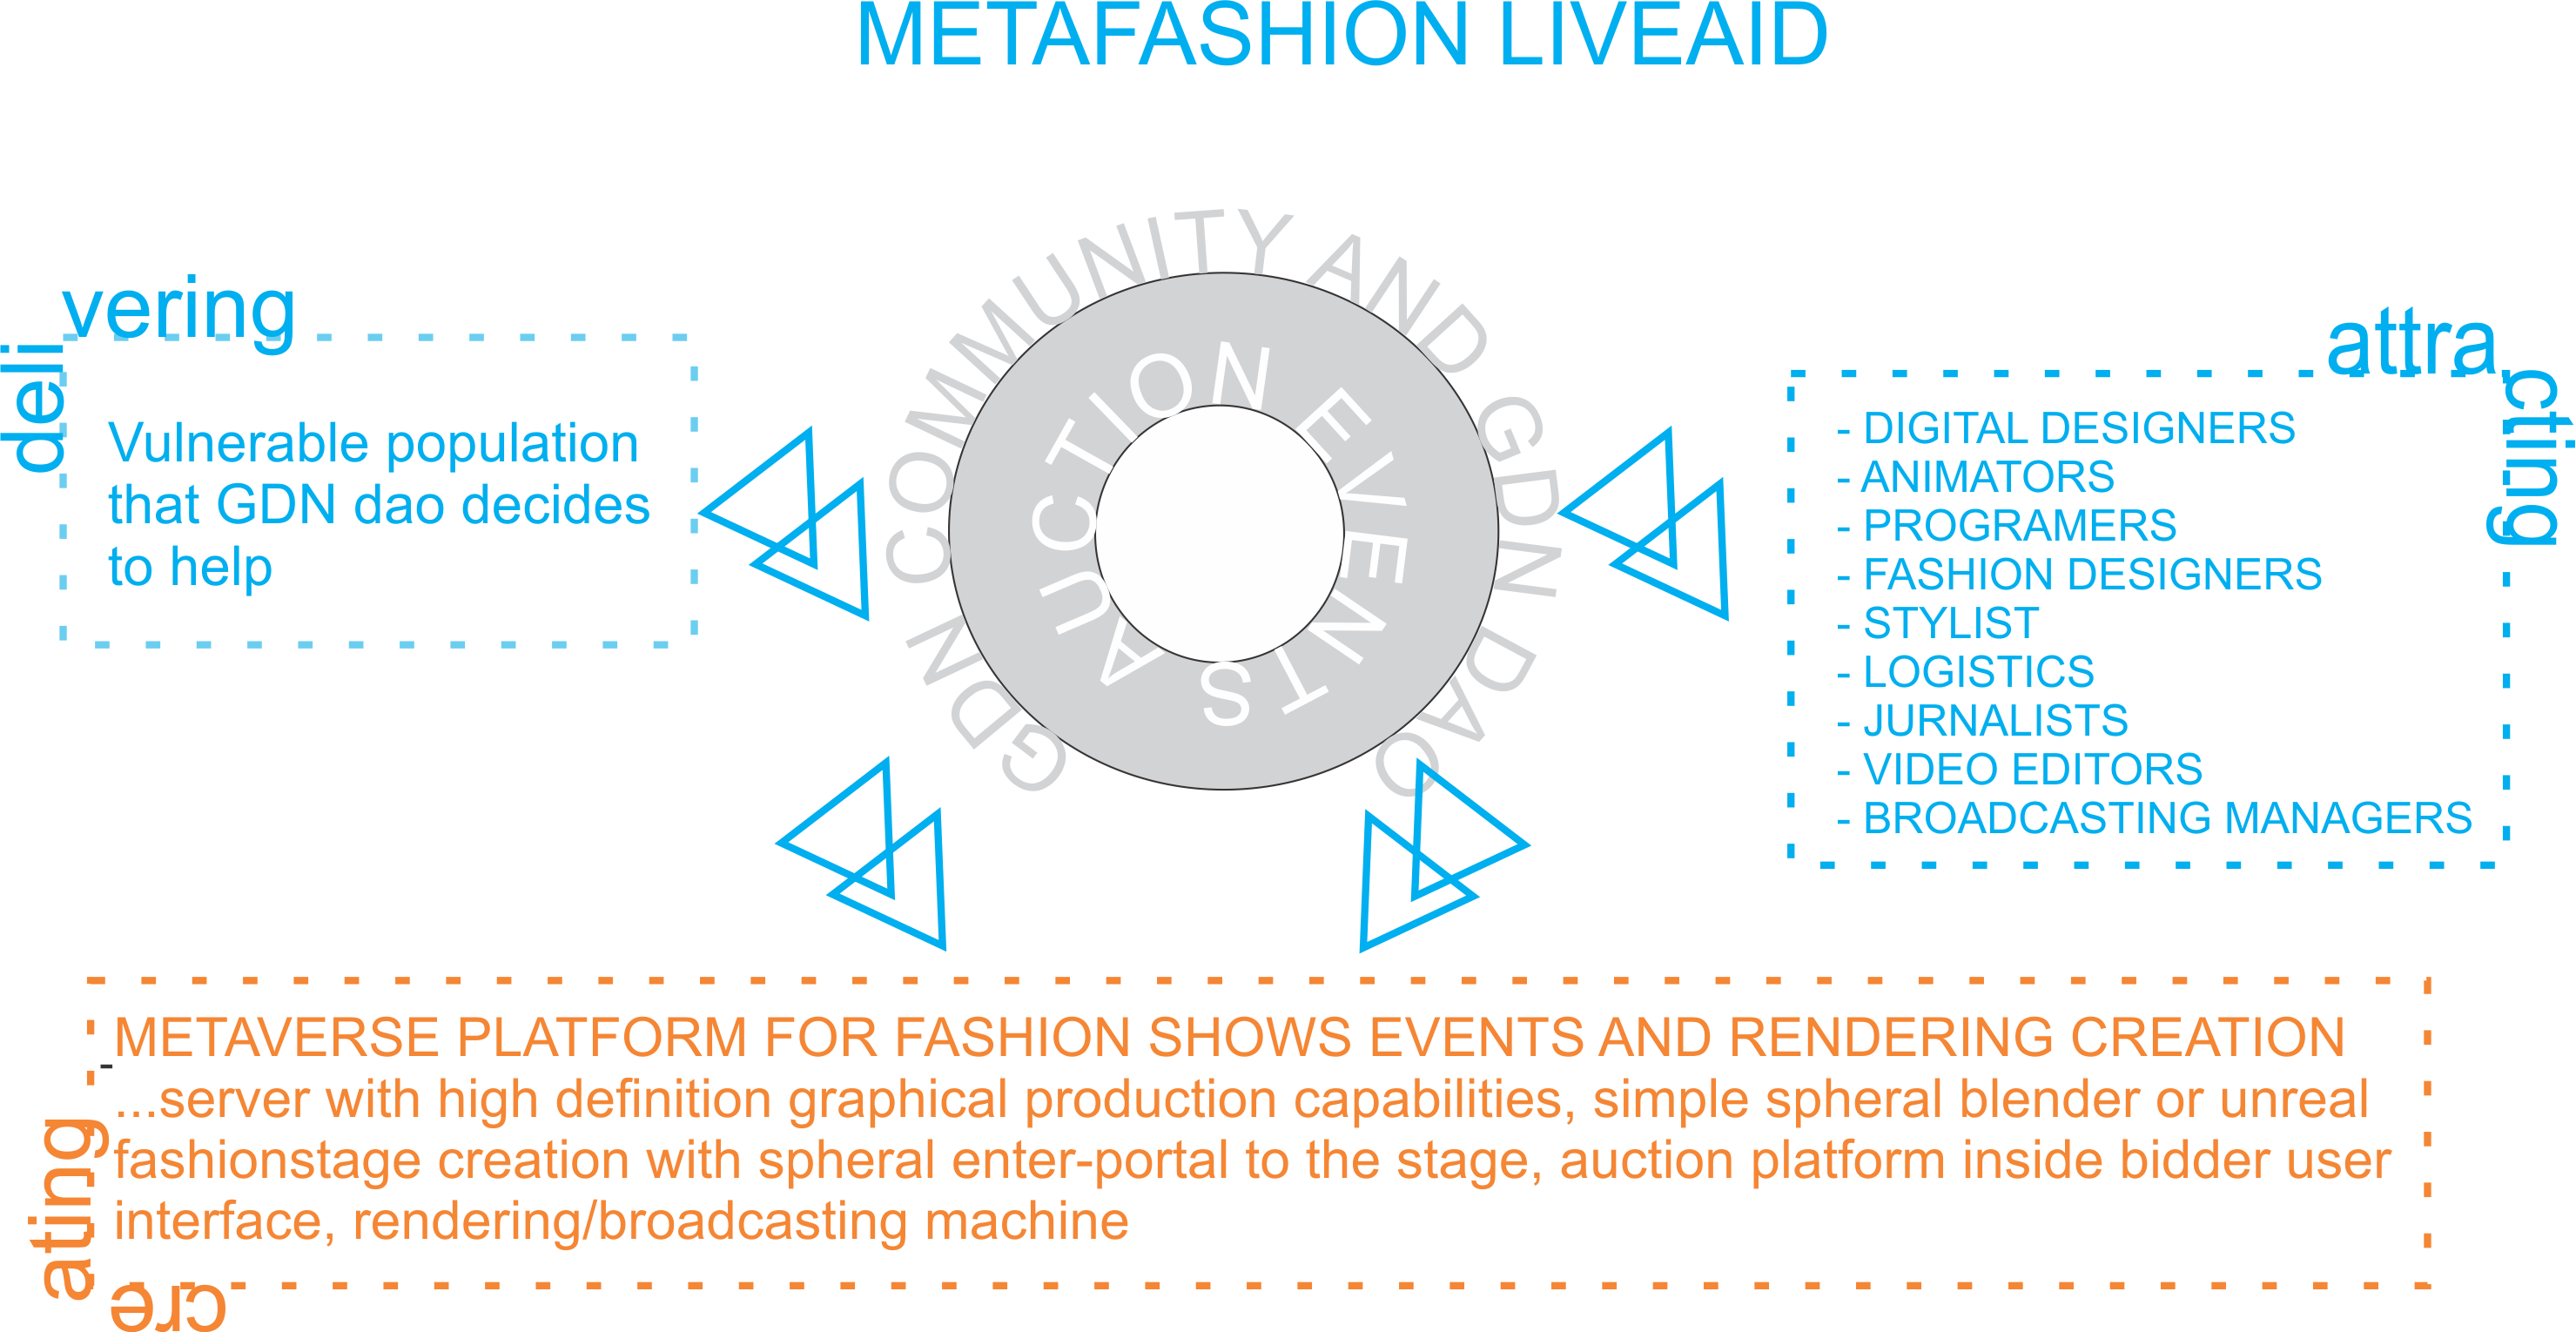 Image 1 Metafashion LIVEAID flowchart